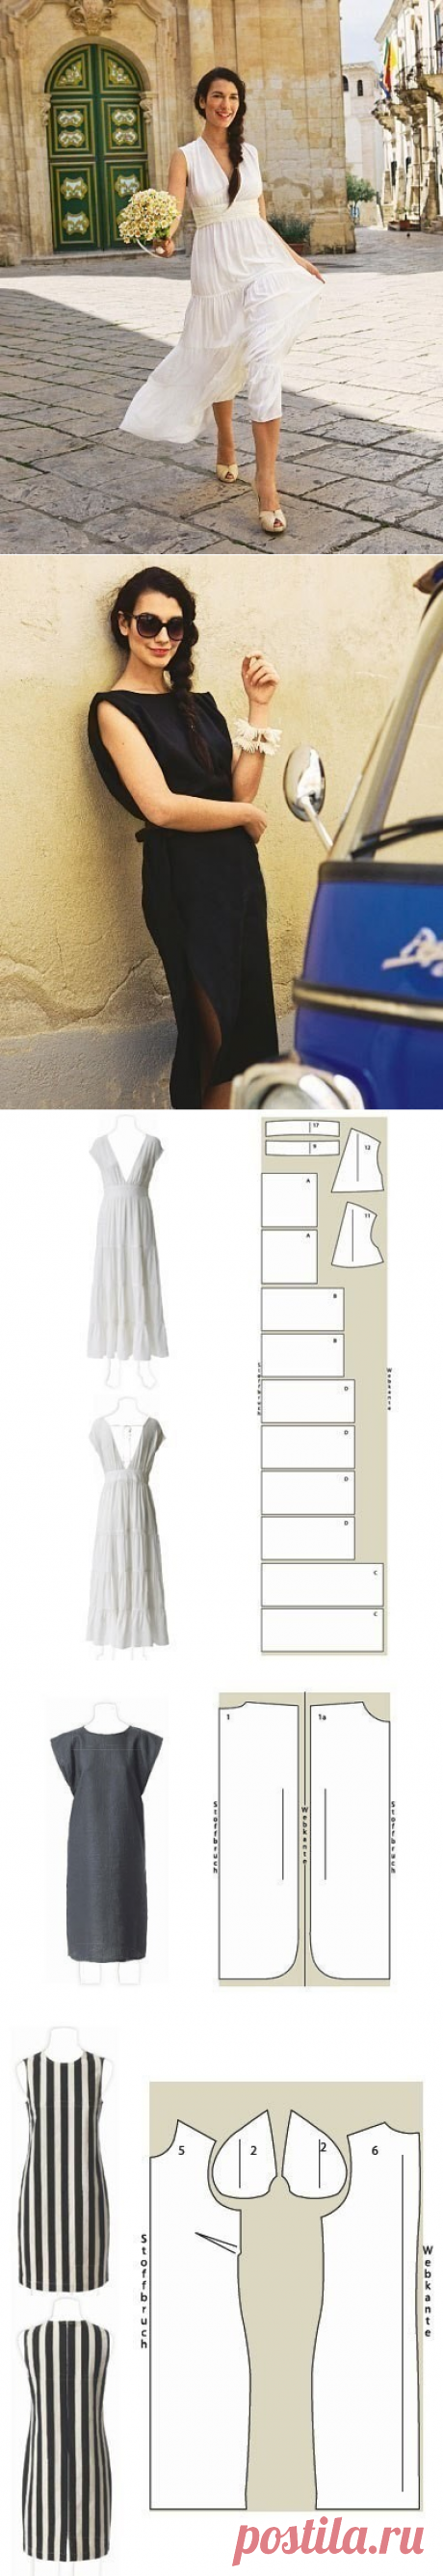 Простые выкройки платьев